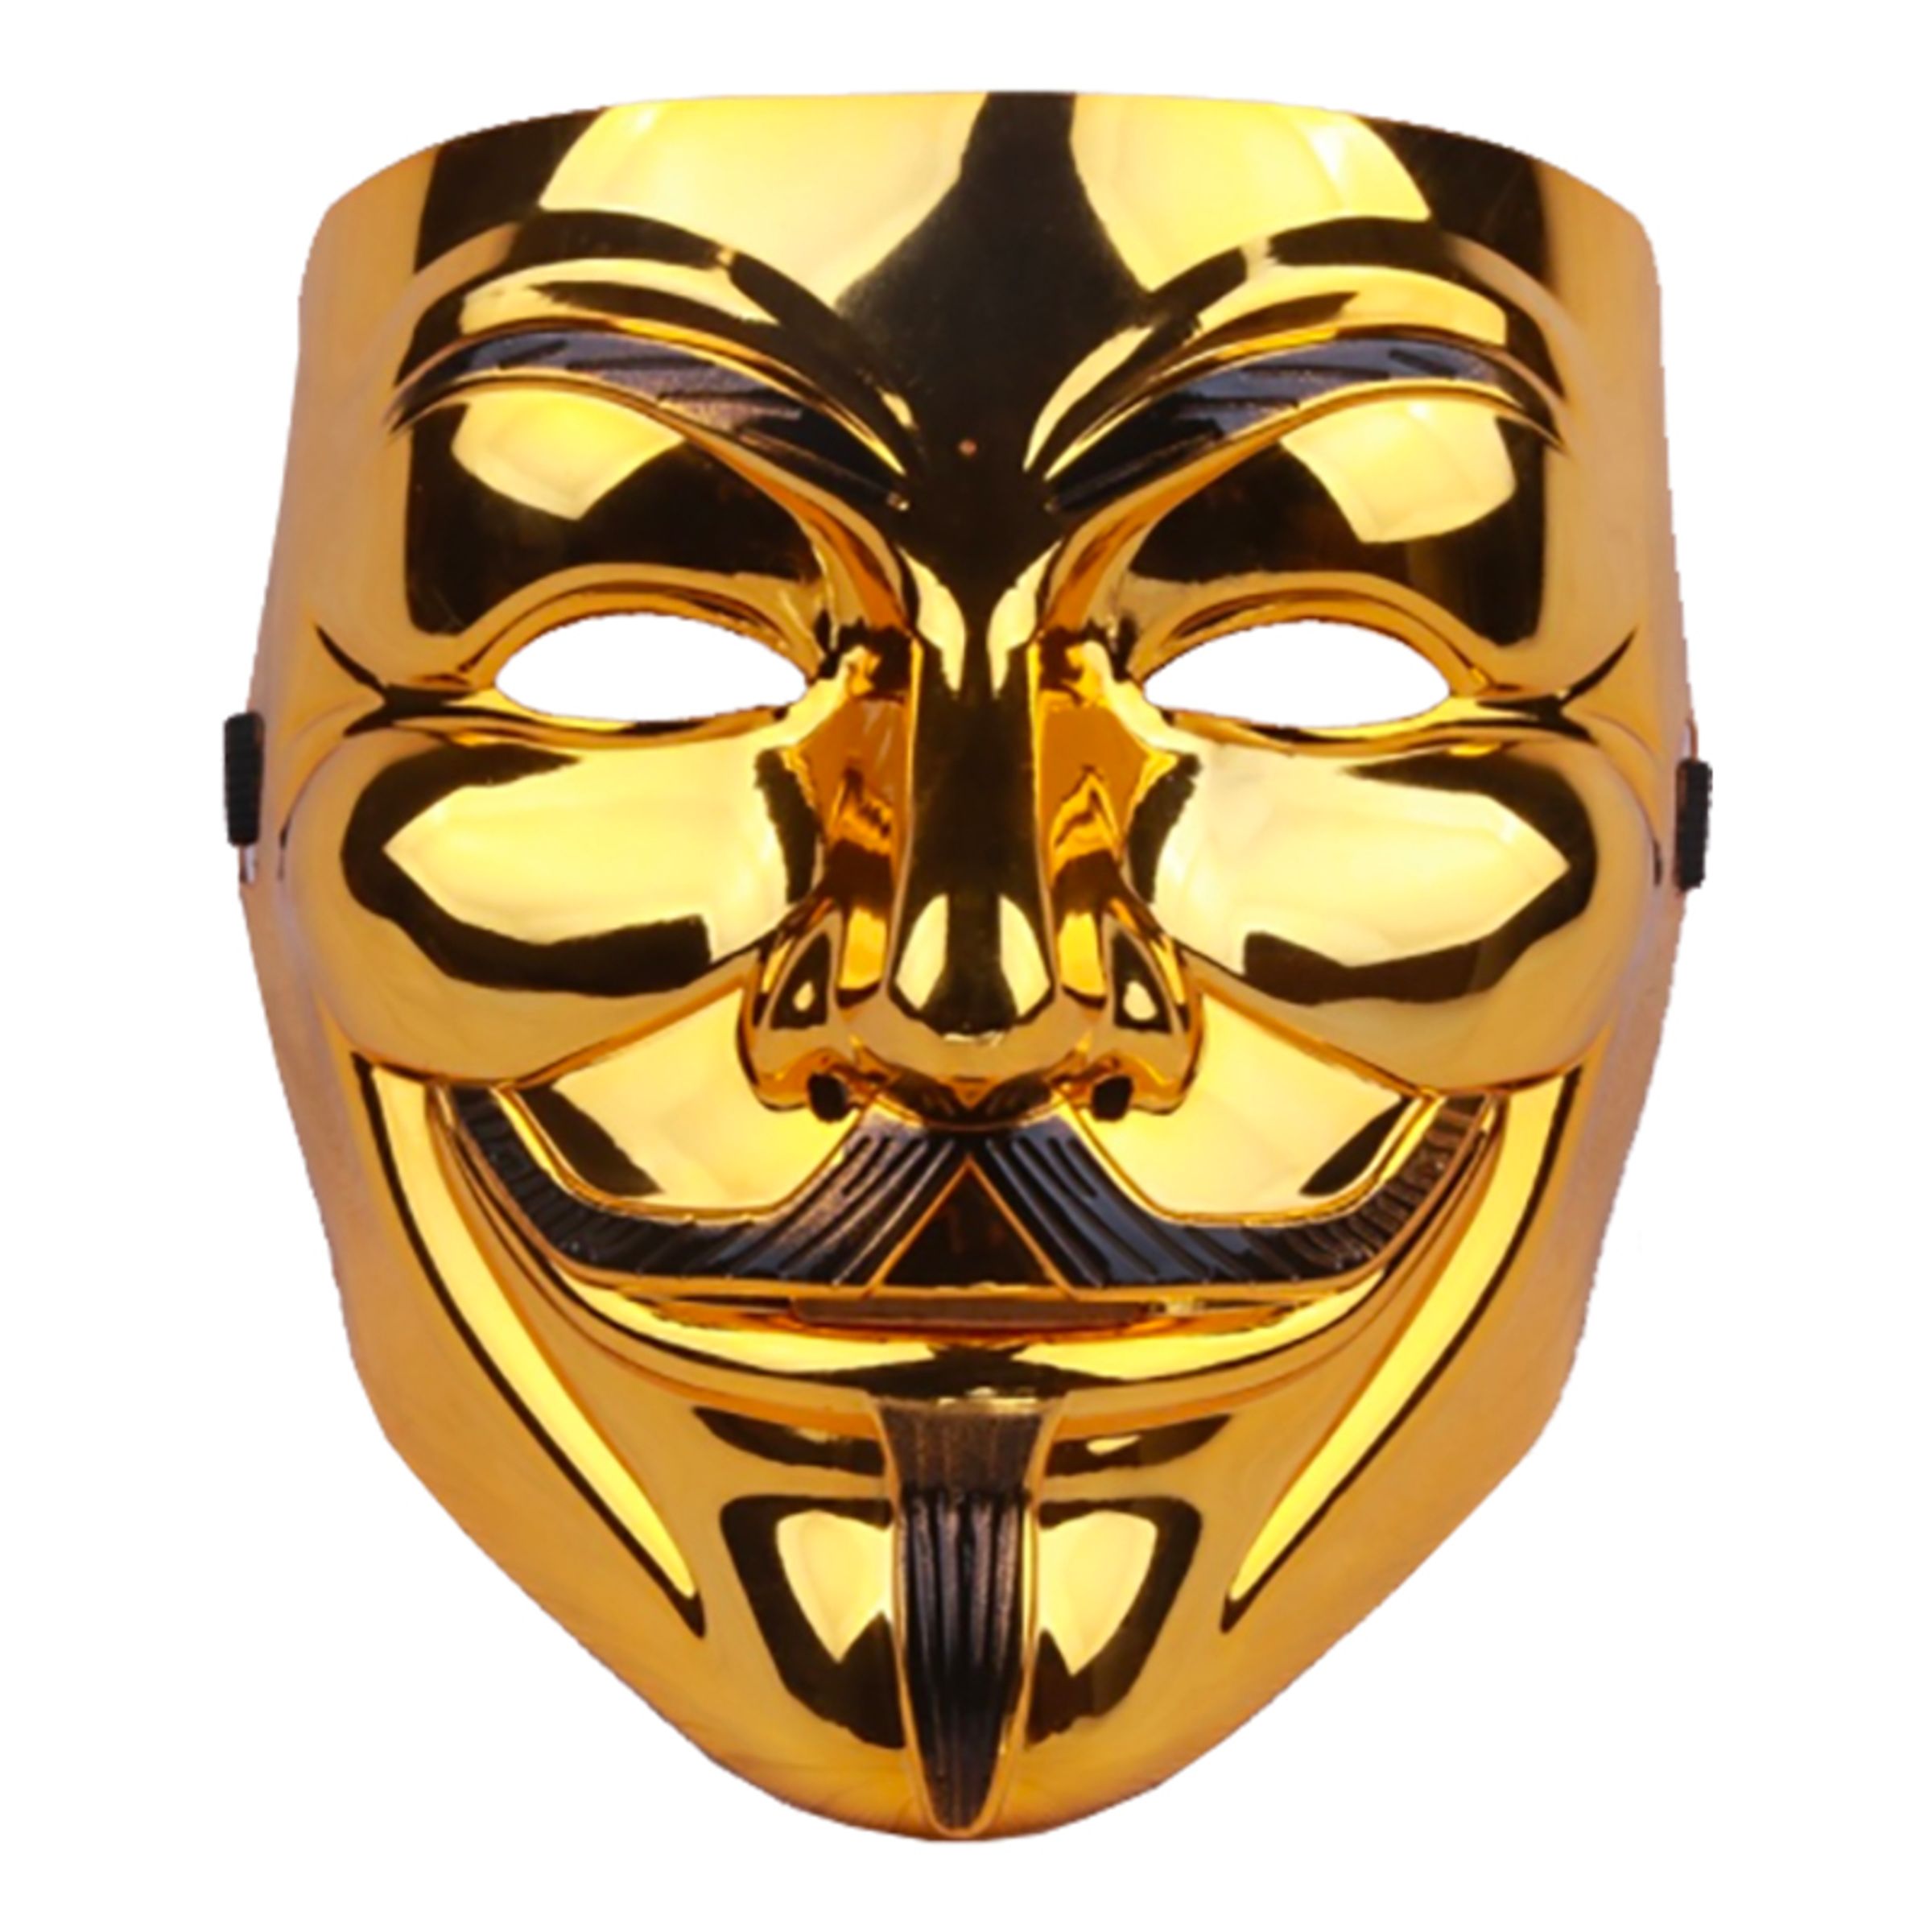 V For Vendetta Guld Mask - One size